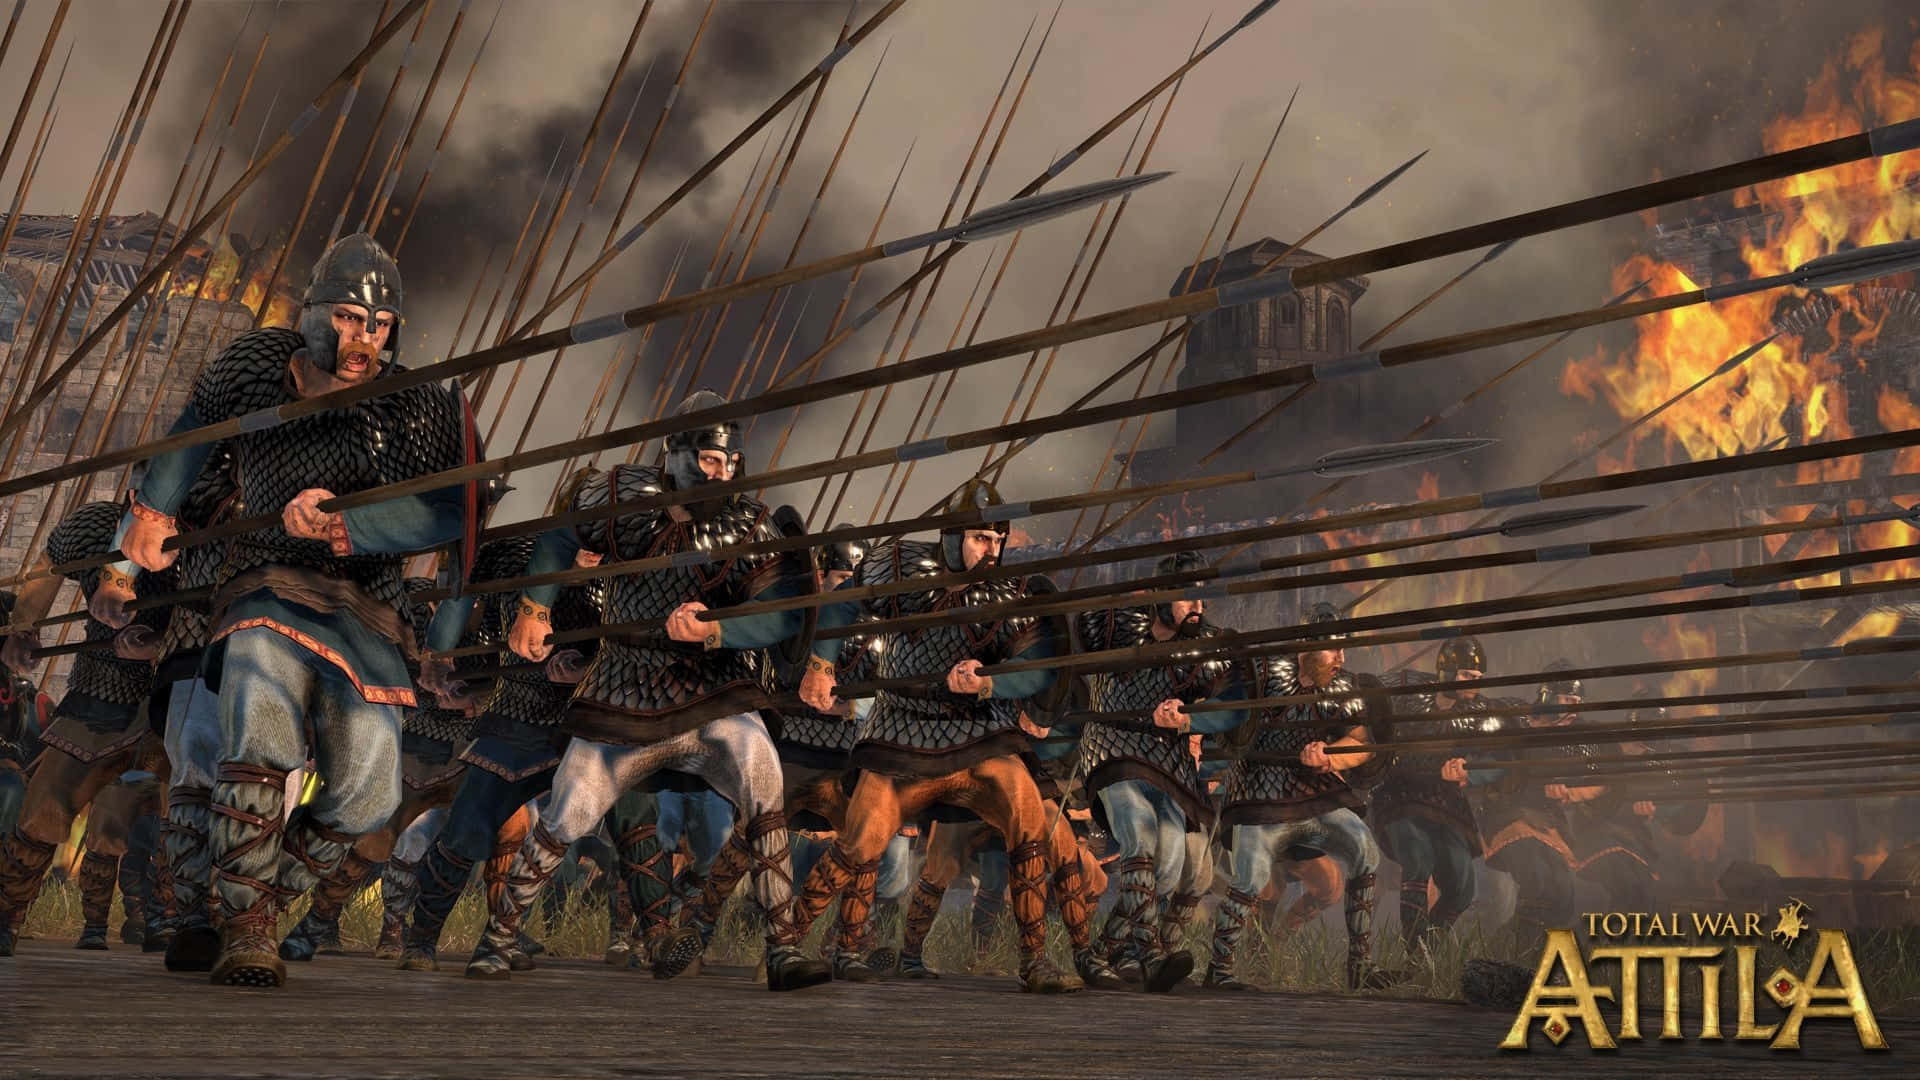 Mestre kunsten af krig i det fantastiske spil Attila Total War. Wallpaper